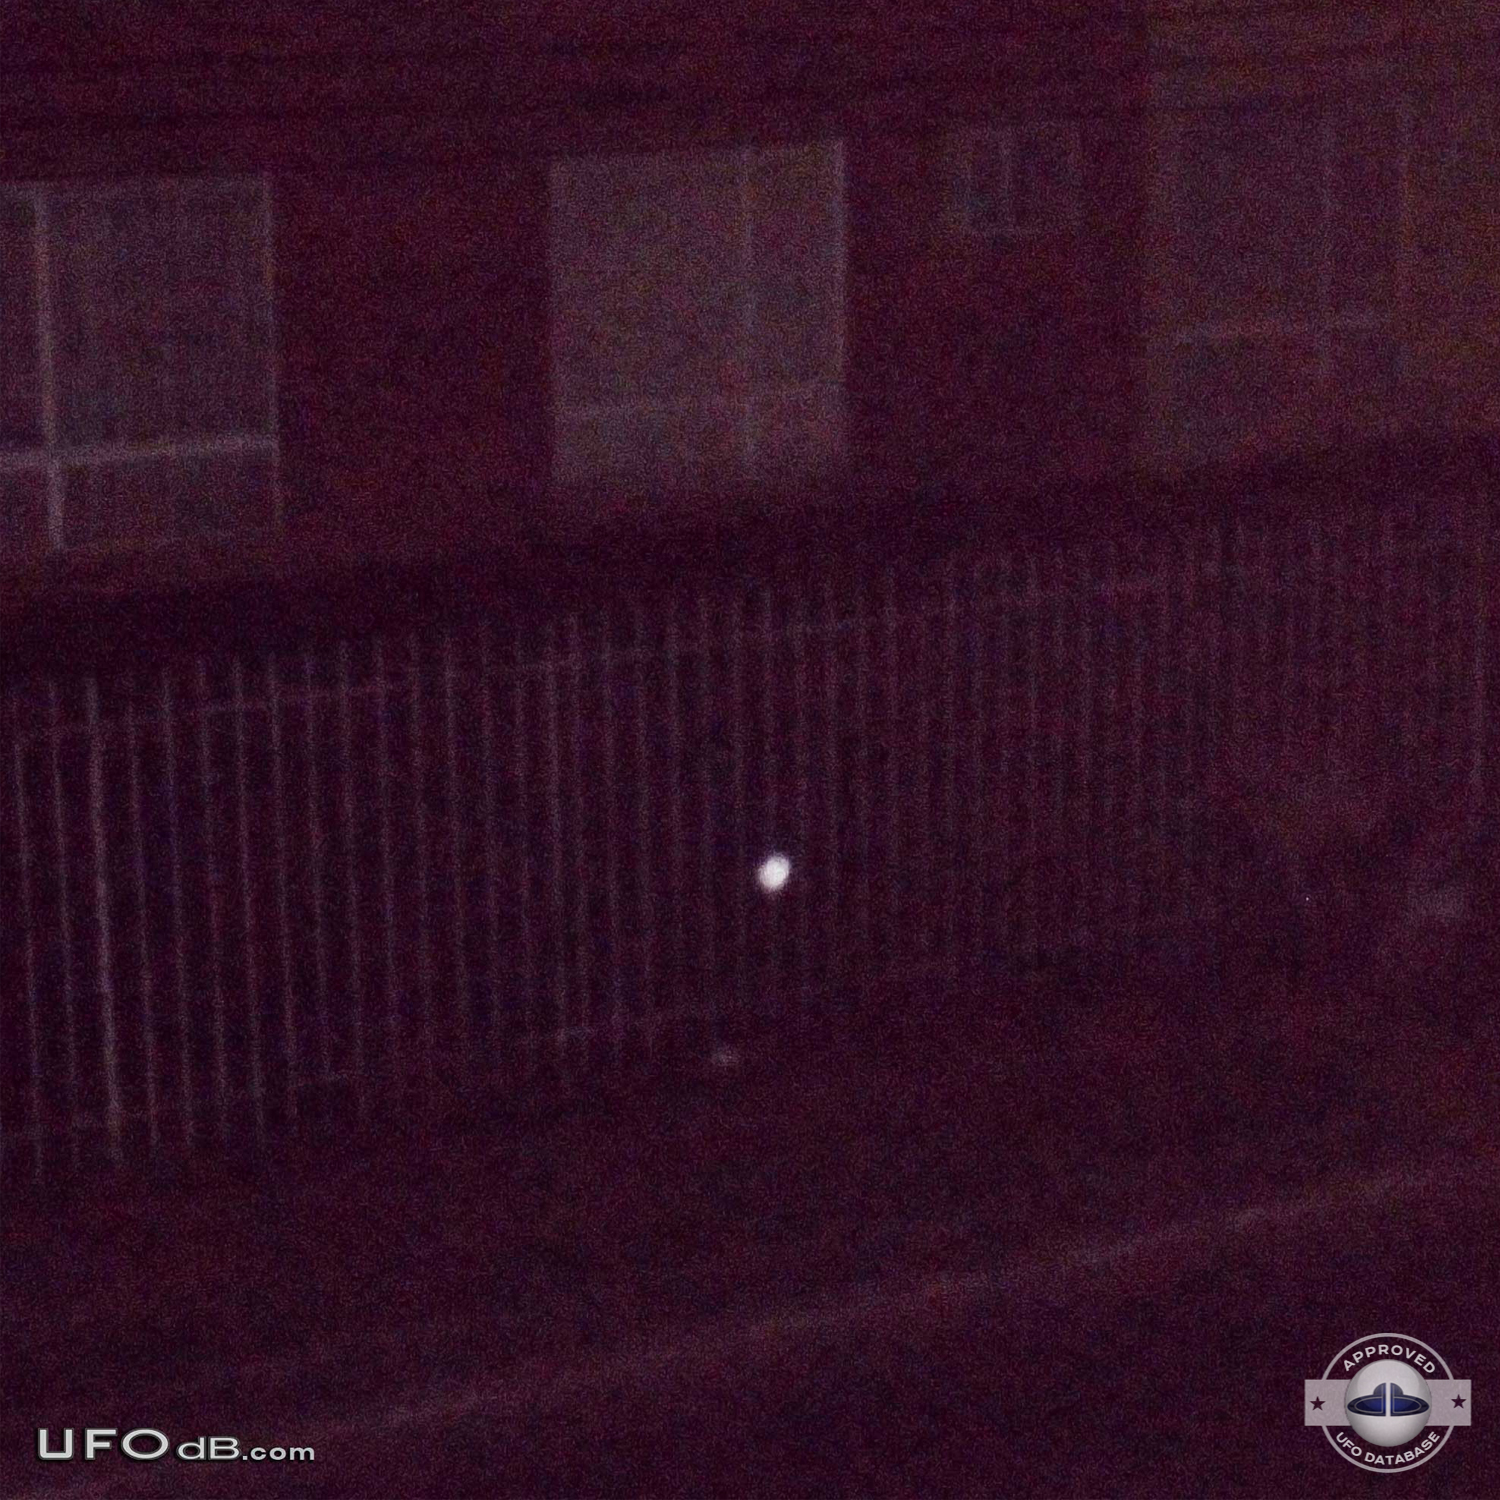 Picture of a Small white probe UFO caught in the backyard Bogota 2012 UFO Picture #400-1